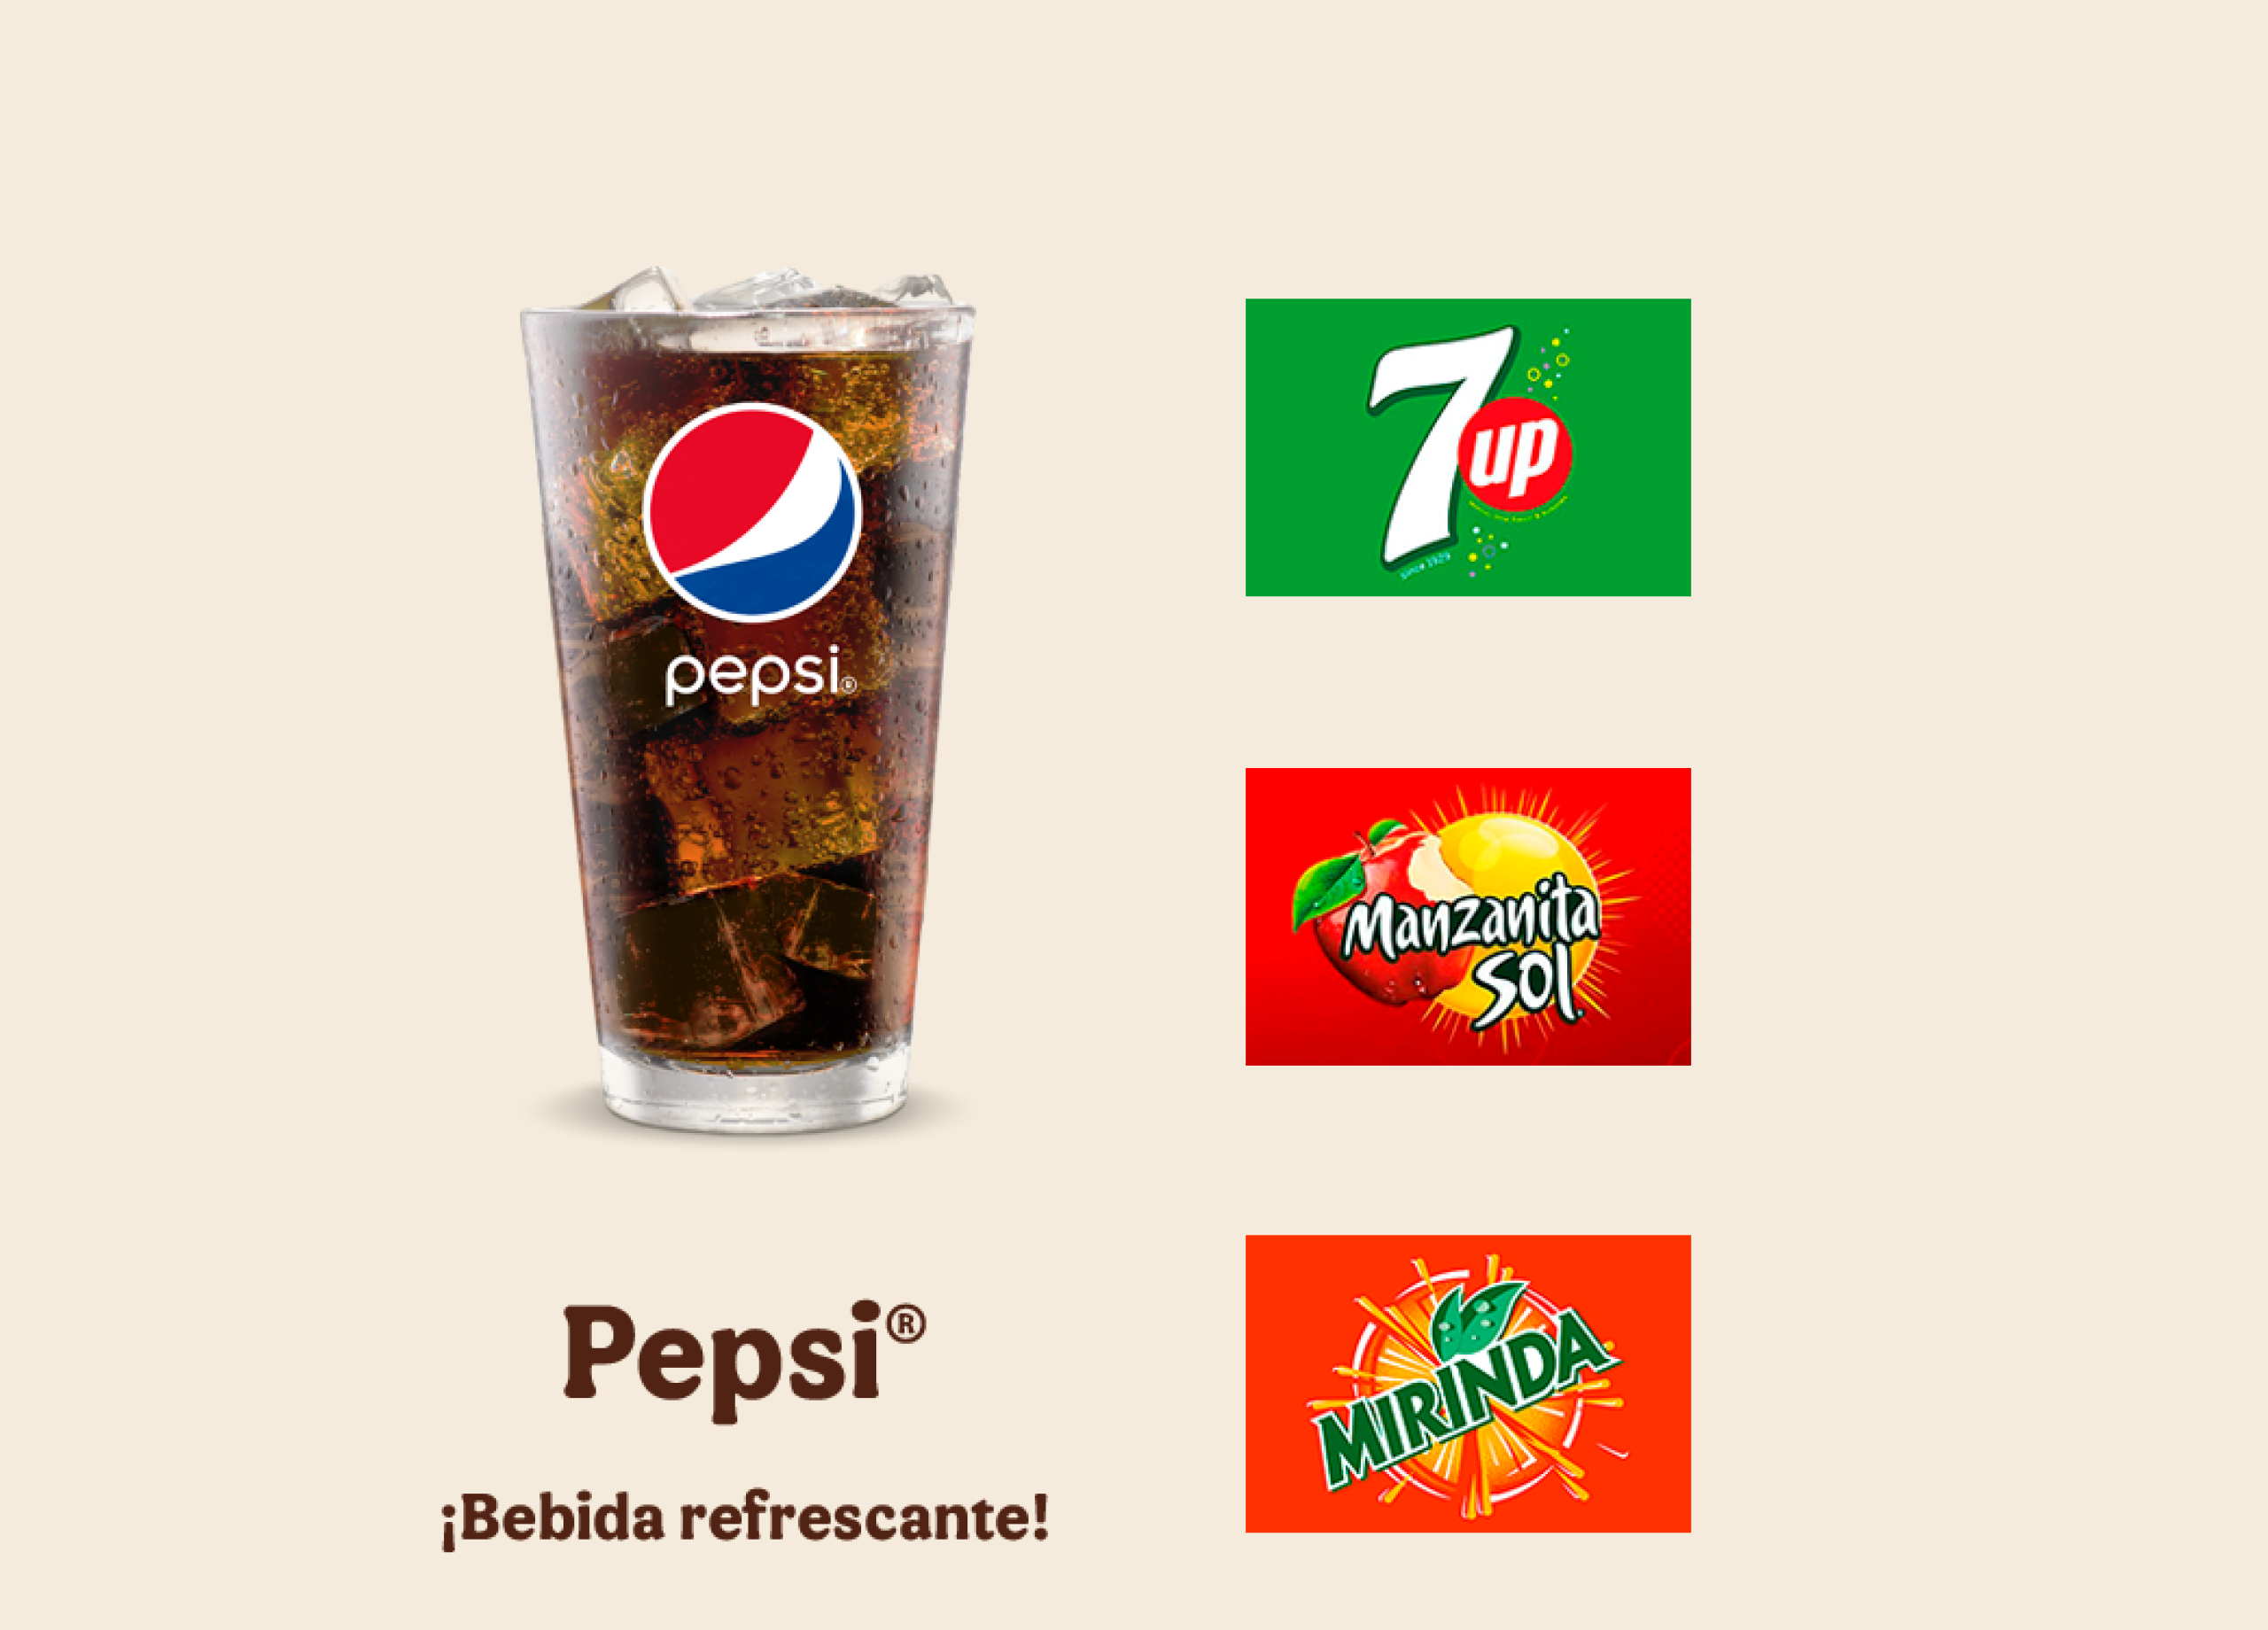 Pepsi®